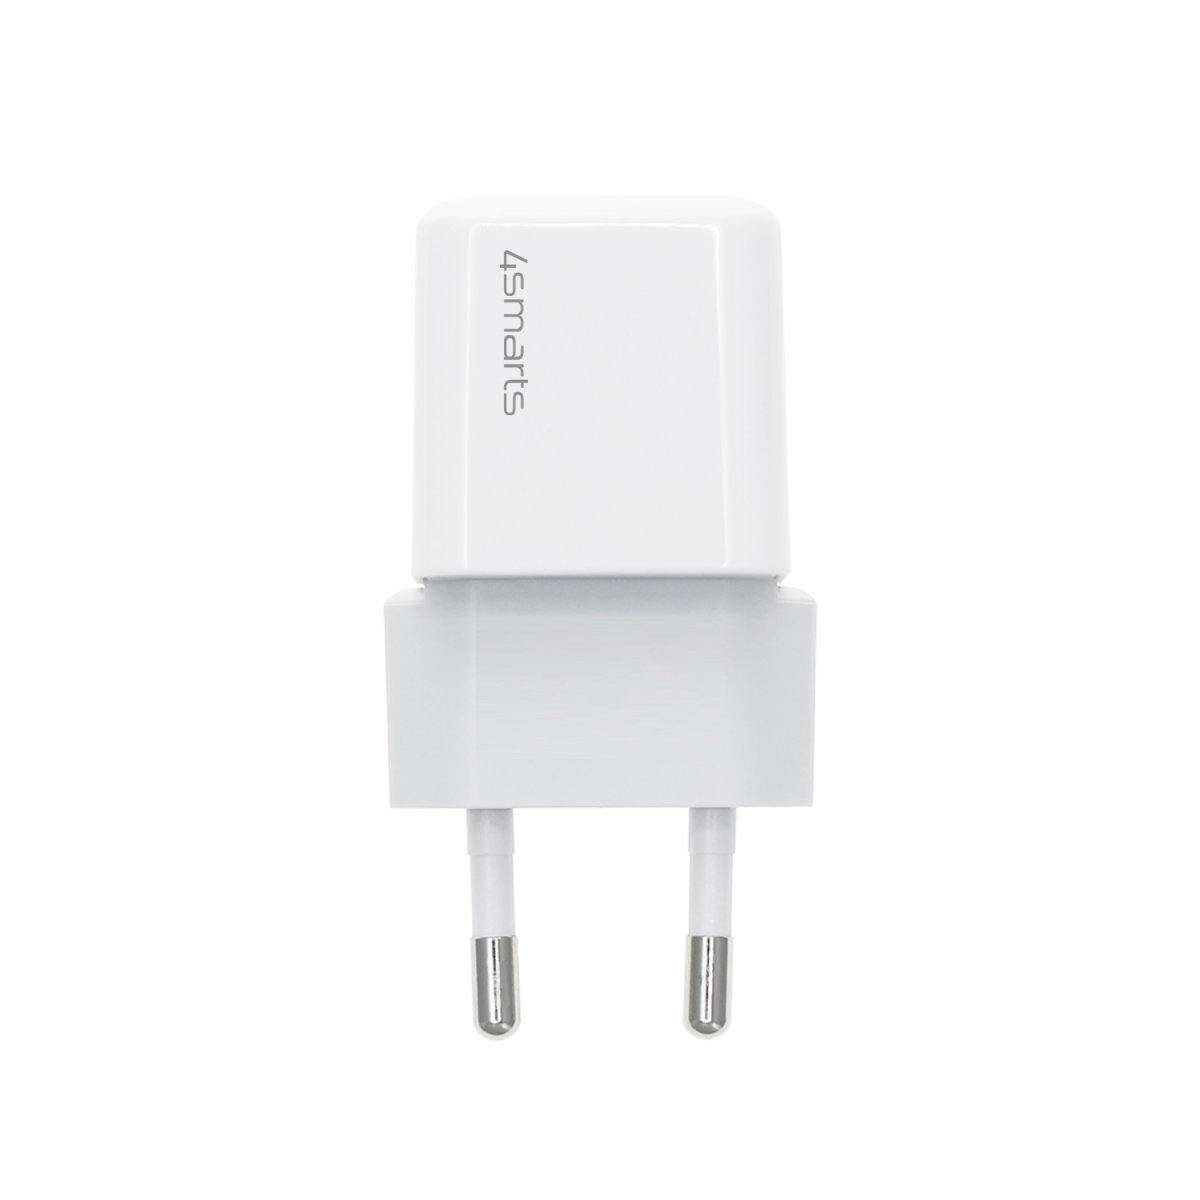 4smarts VoltPlug Mini - Netzteil - 30 Watt - 3 A - Apple Fast Charge, PD, PD 2.0, PD 3.0, QC 2.0, QC 3.0, AFC (USB-C)